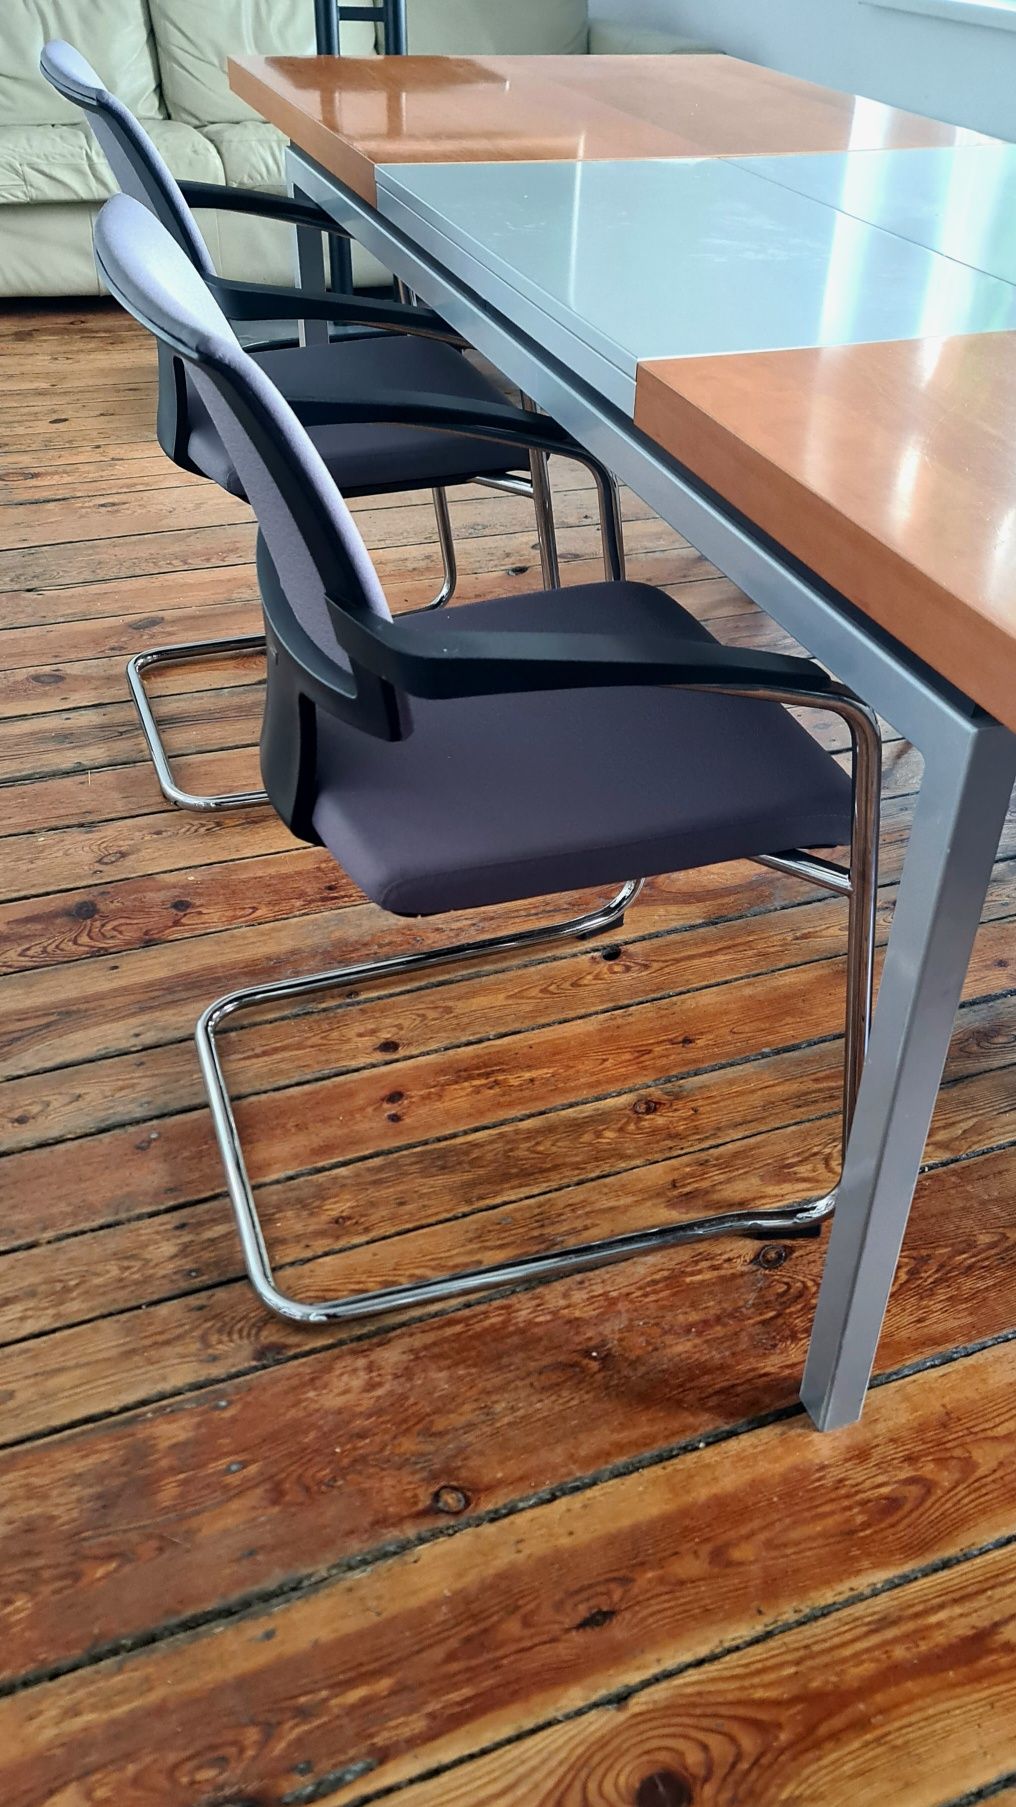 Pełny zestaw do sali konferencyjnej
Rozkładany stół + 4 krzesła